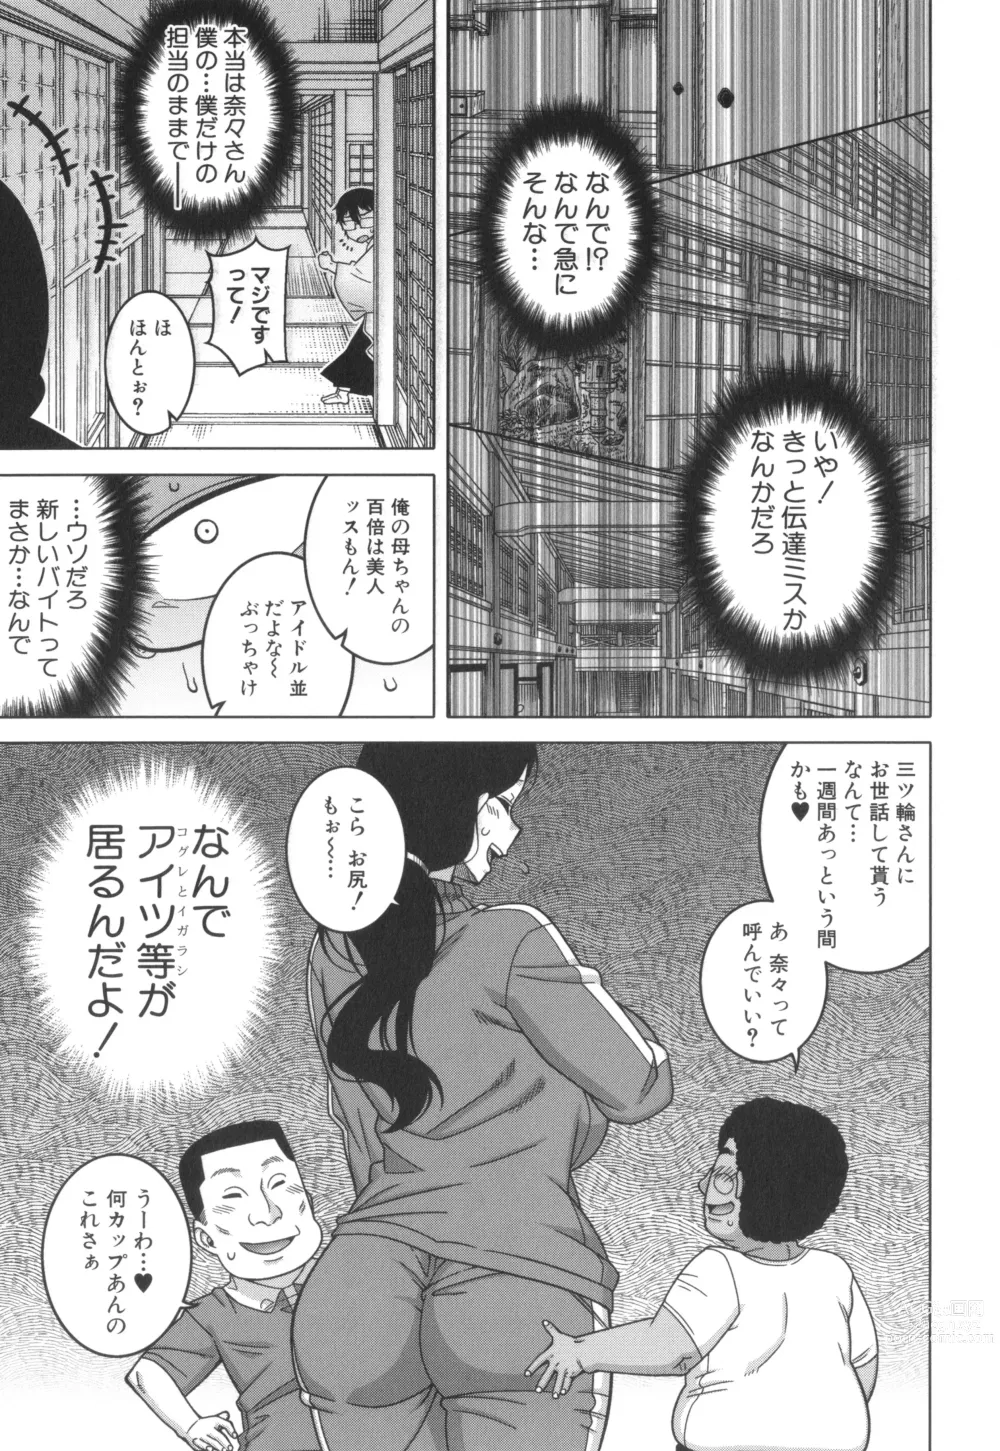 Page 30 of manga Kami-sama no Tsukurikata